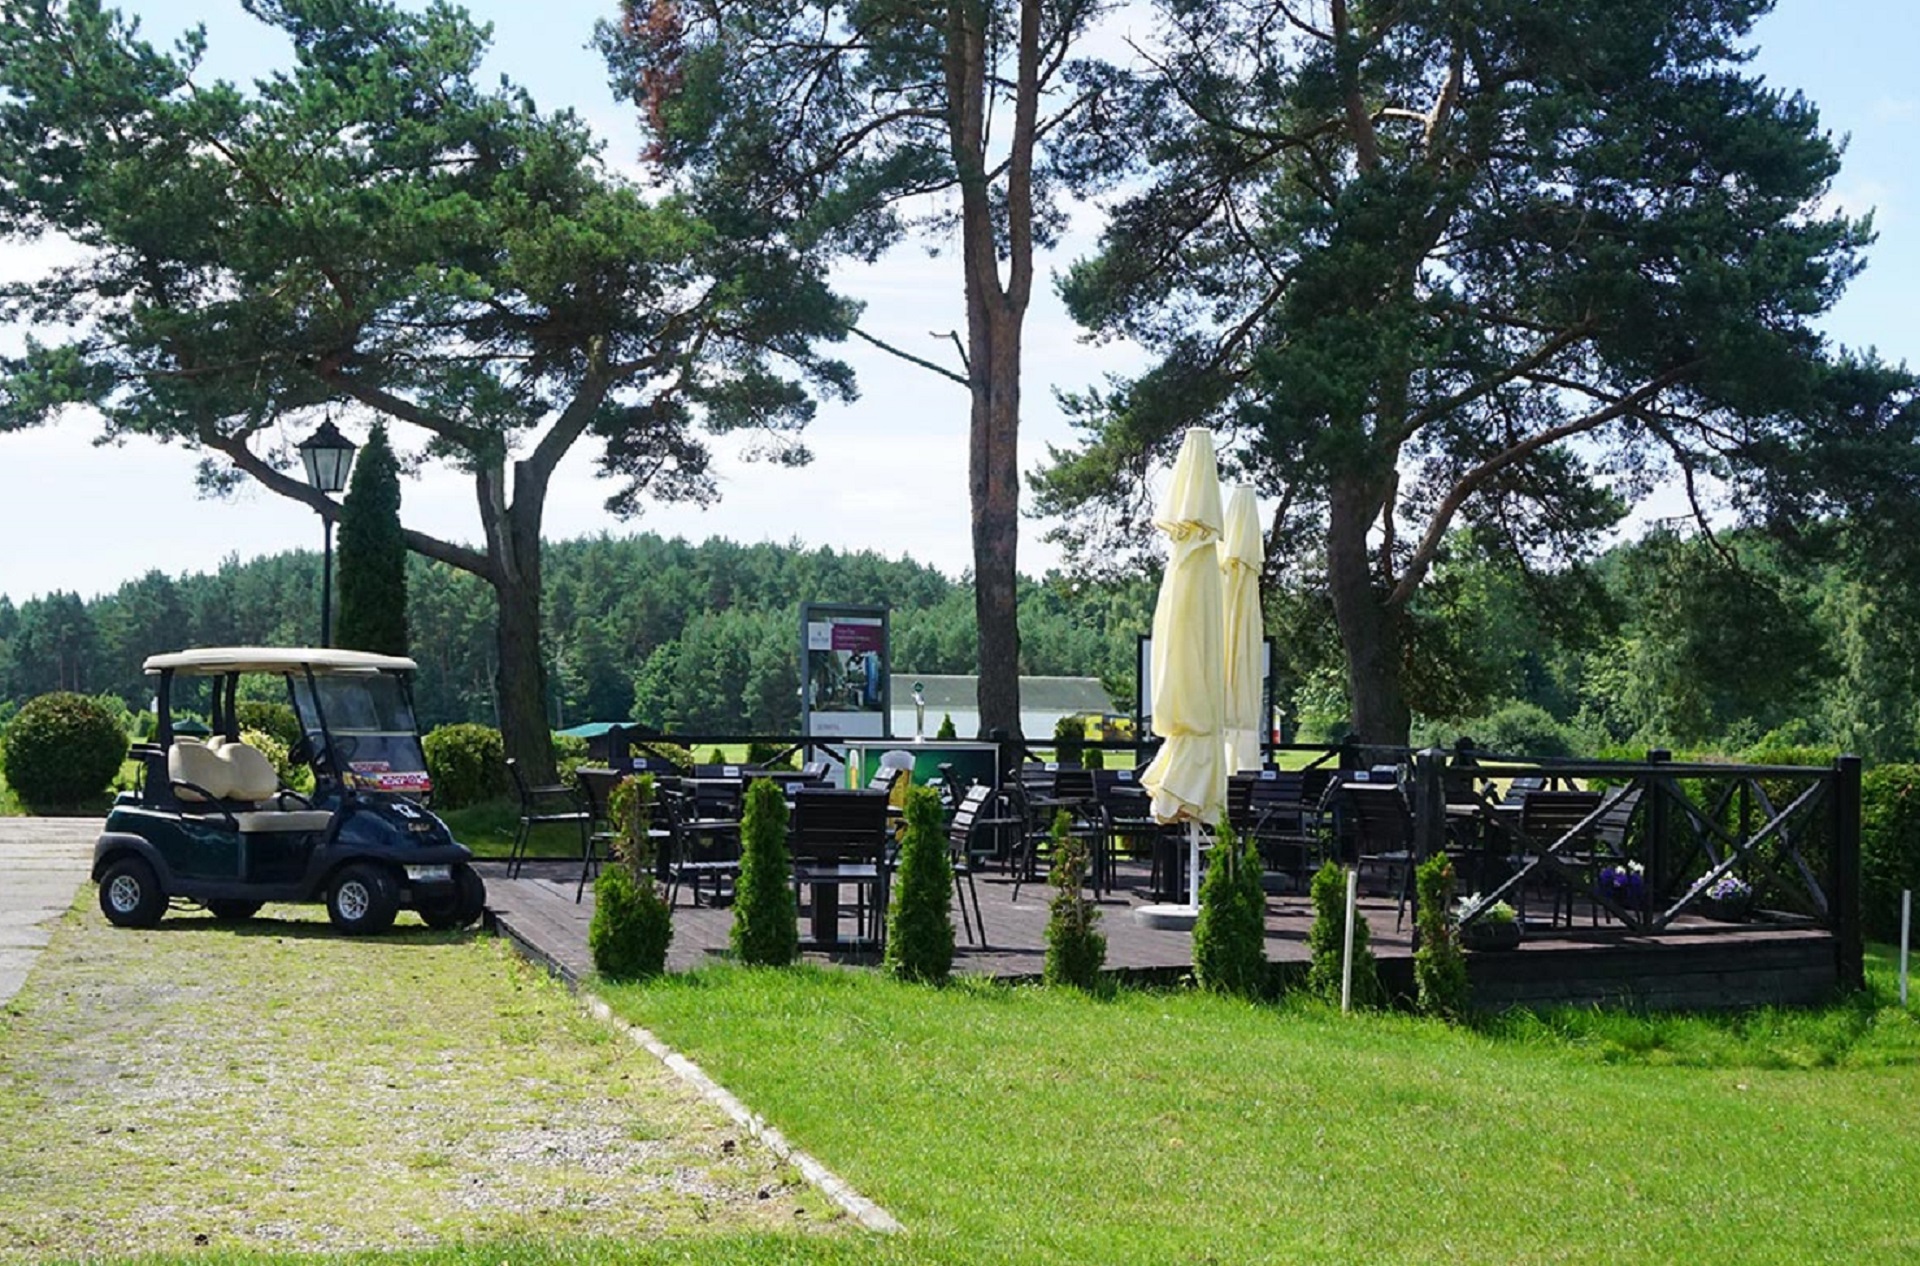 Amber Baltic Golf Club | Golf i Polen